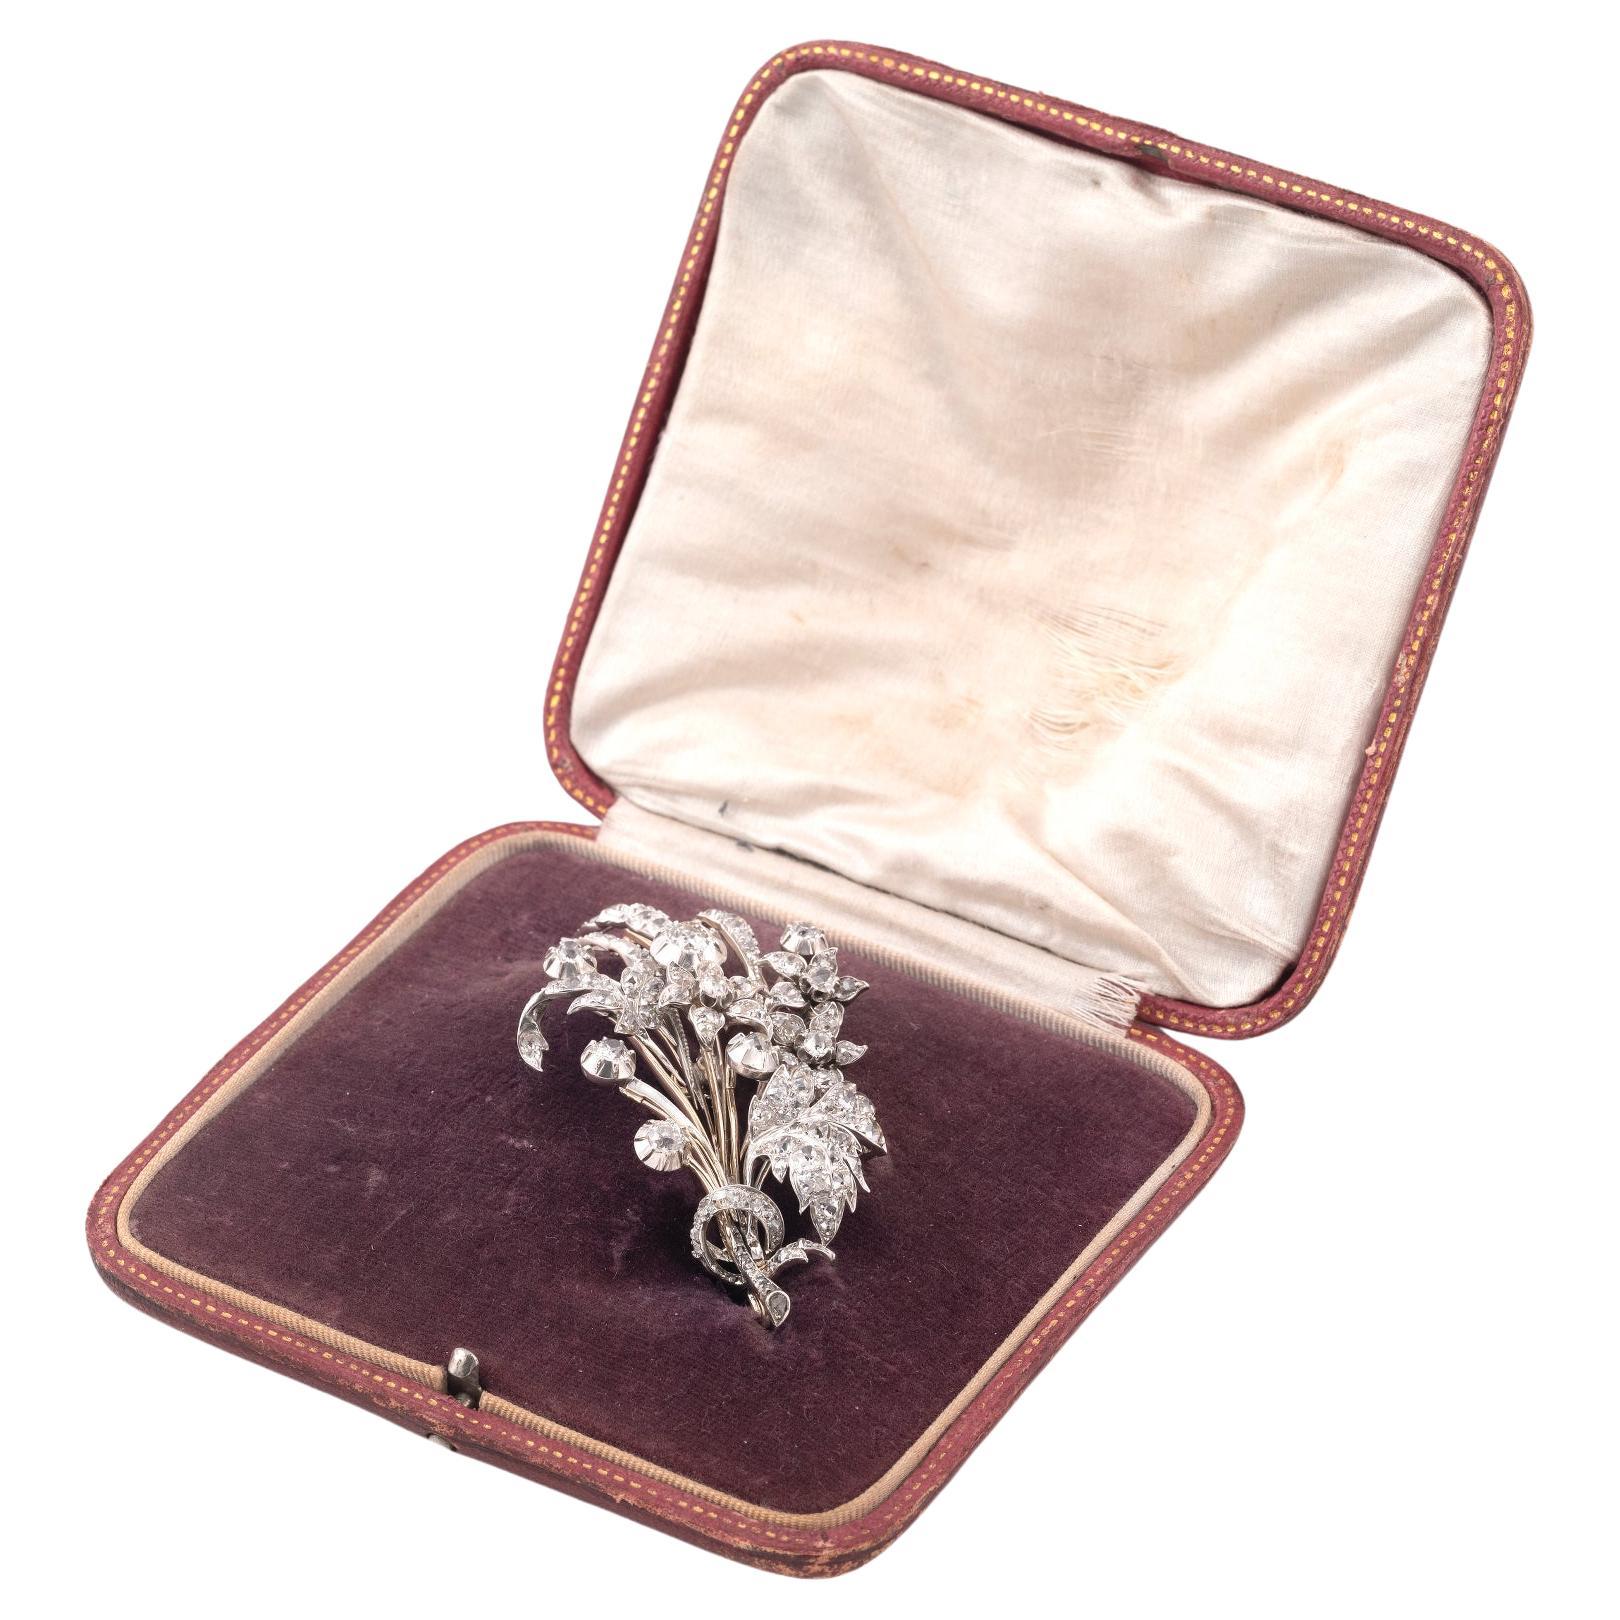 Broche victorienne en diamant, fin du 19e siècle, conçue comme une gerbe de fleurs, sertie de diamants circulaires et de diamants taillés en rose, environ 6,5 ct, longueur 8 cm.
Avec étui.